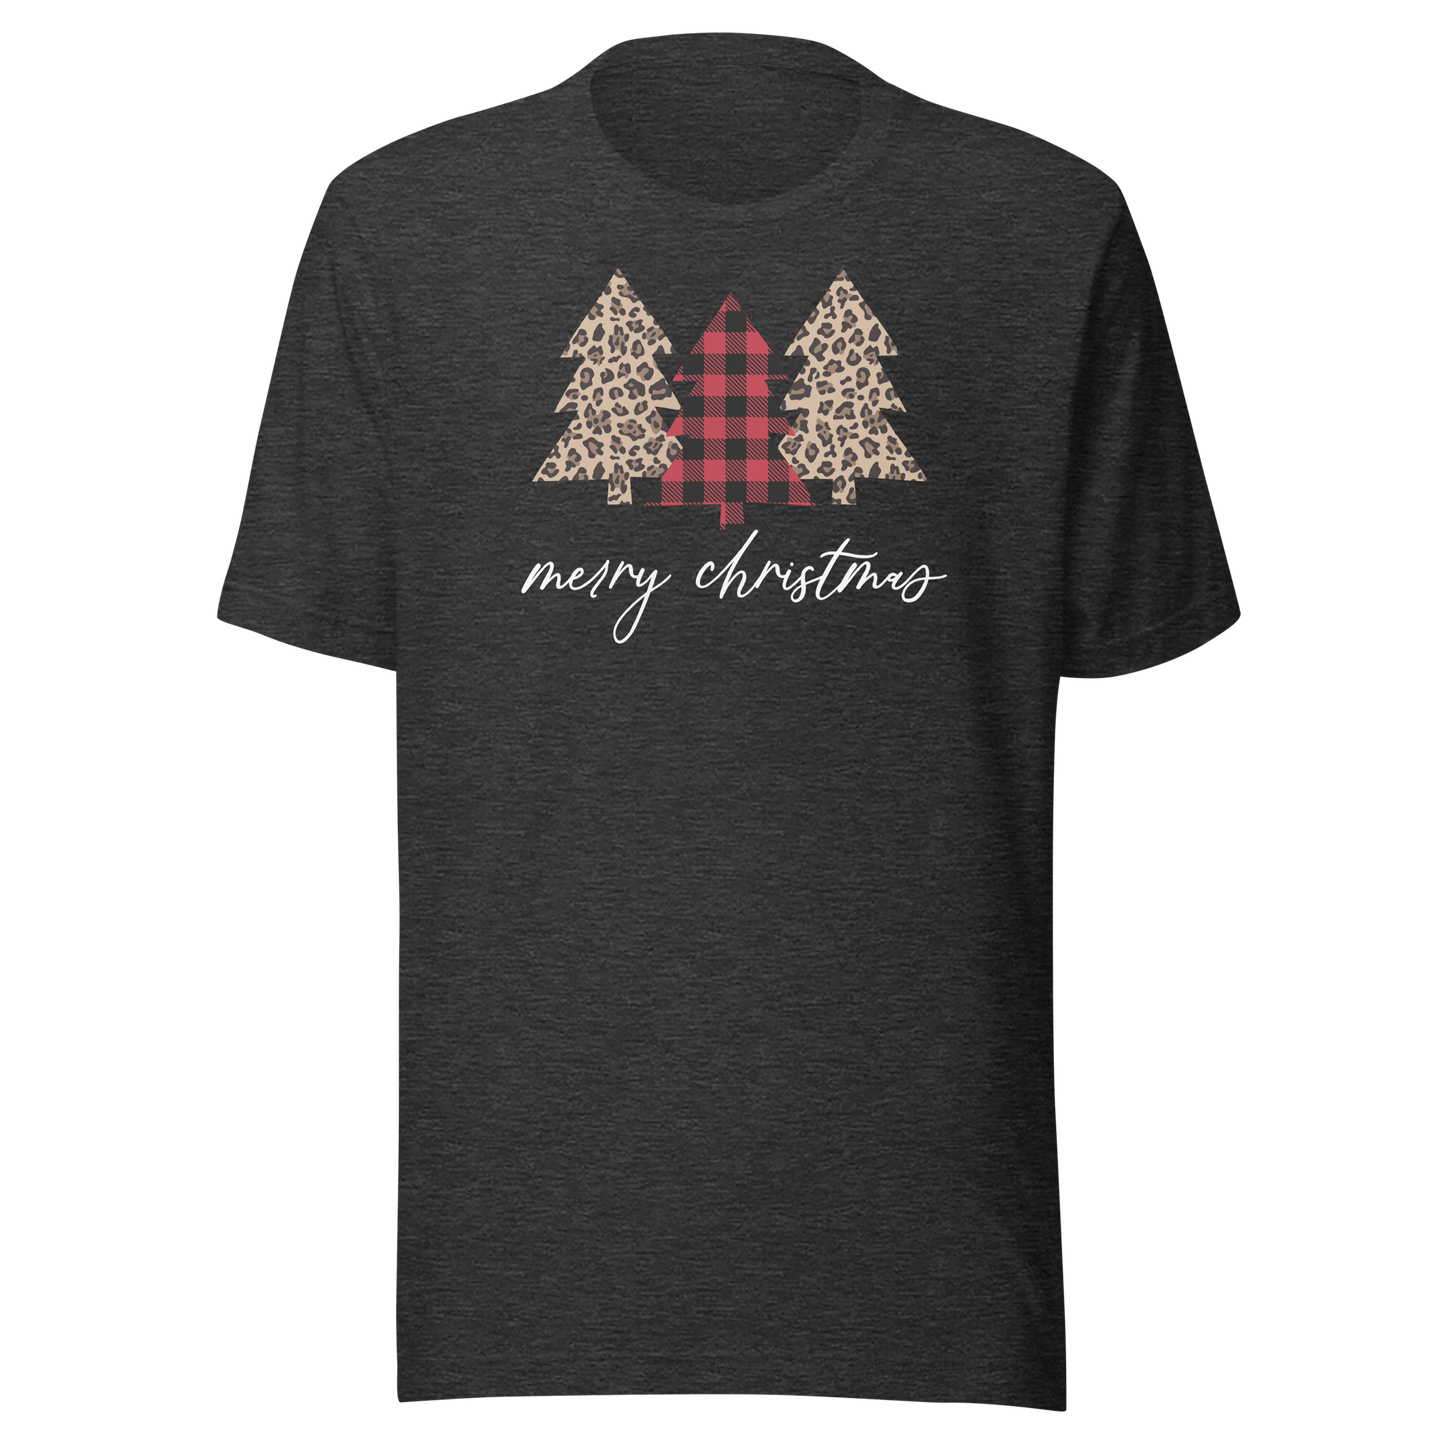 Designer Trees T-Shirt